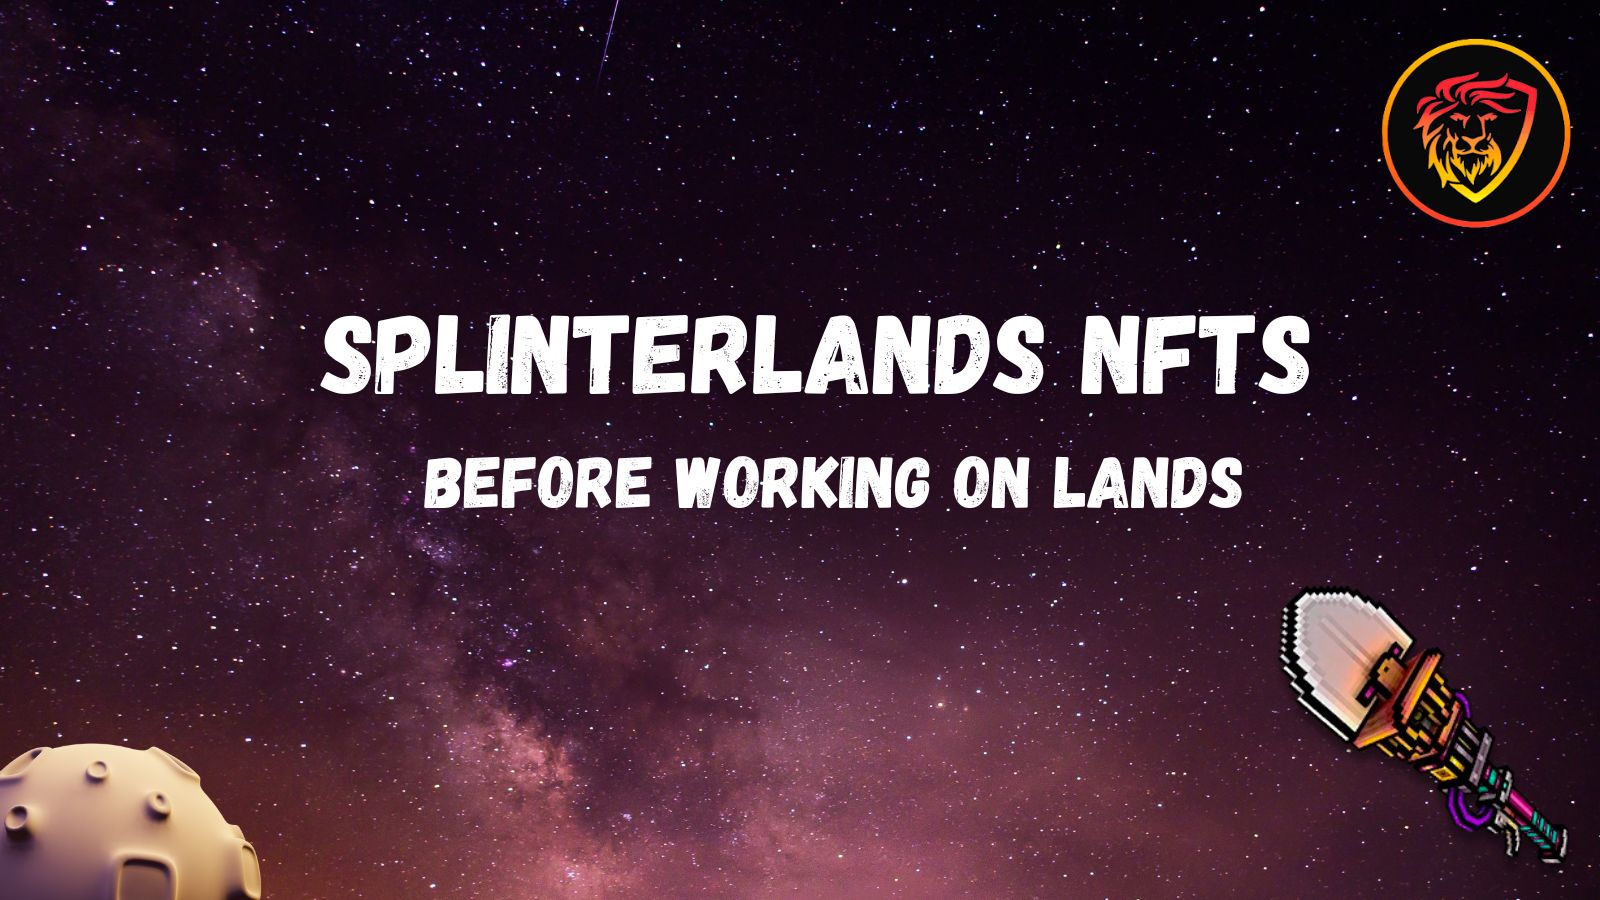 splinterlands nfts before lands.jpg